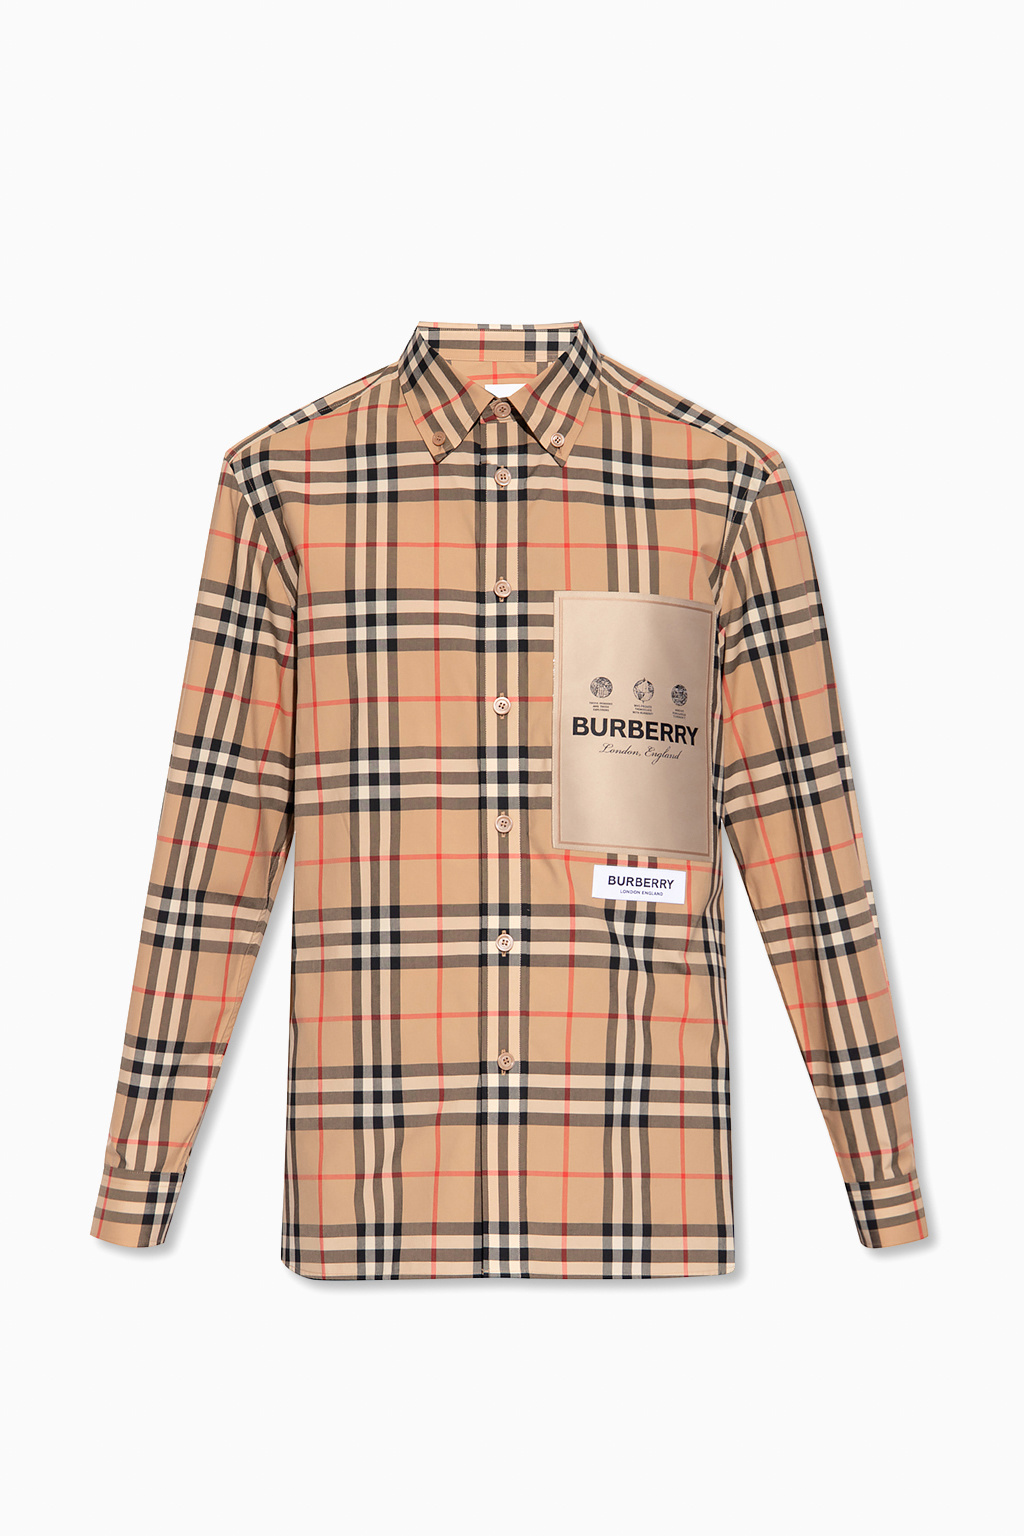 Burberry ‘Cuthbert’ checked shirt